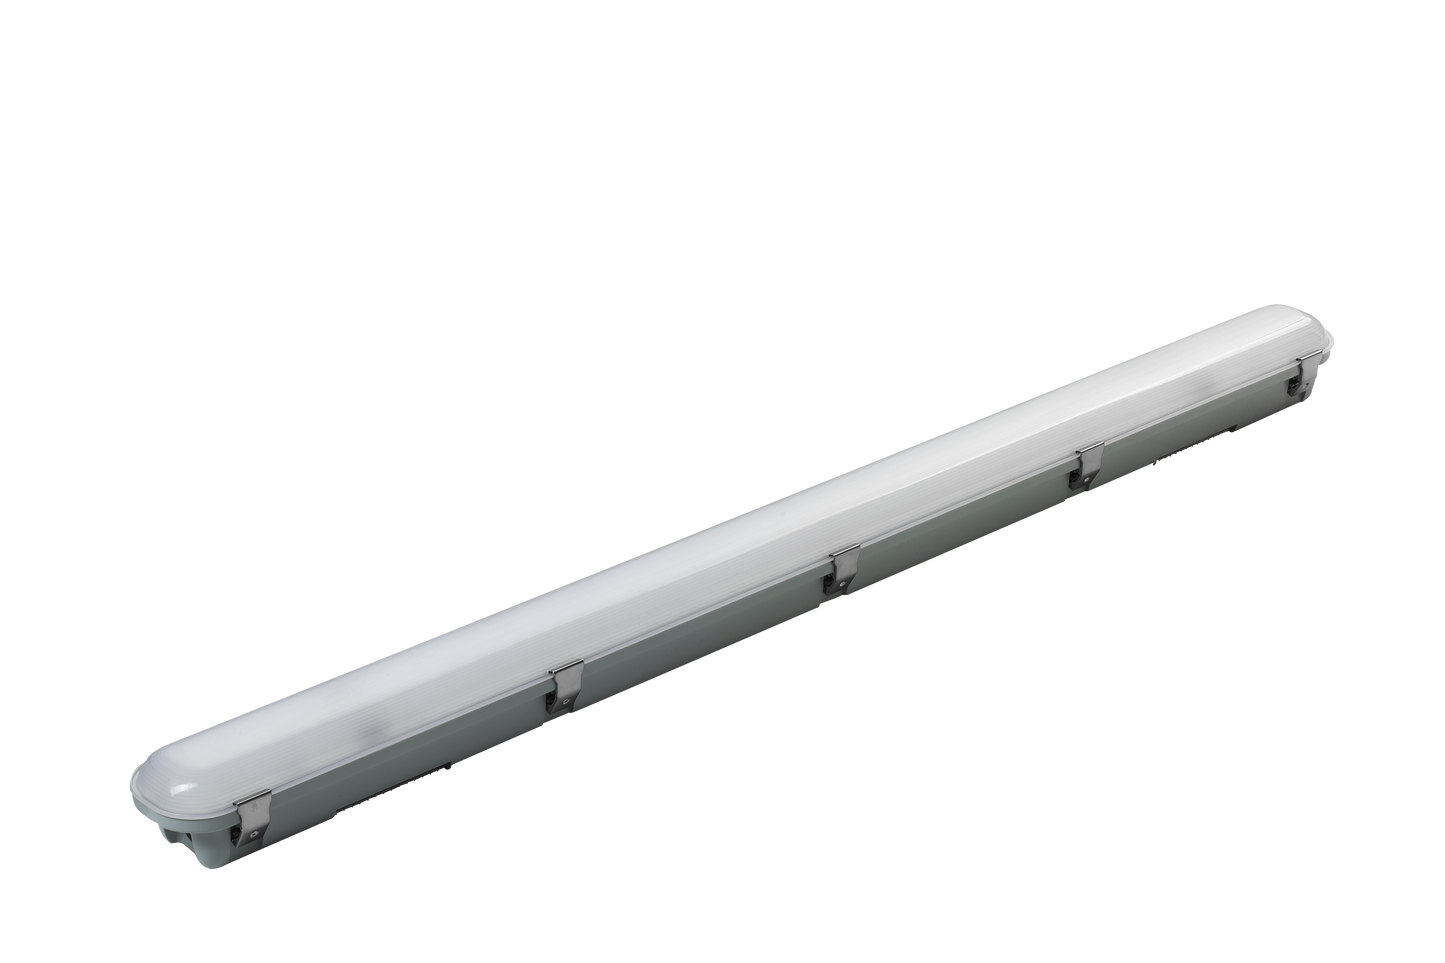 4ft LED Vapor Tight Linear (4-PACK) 52w 4000K